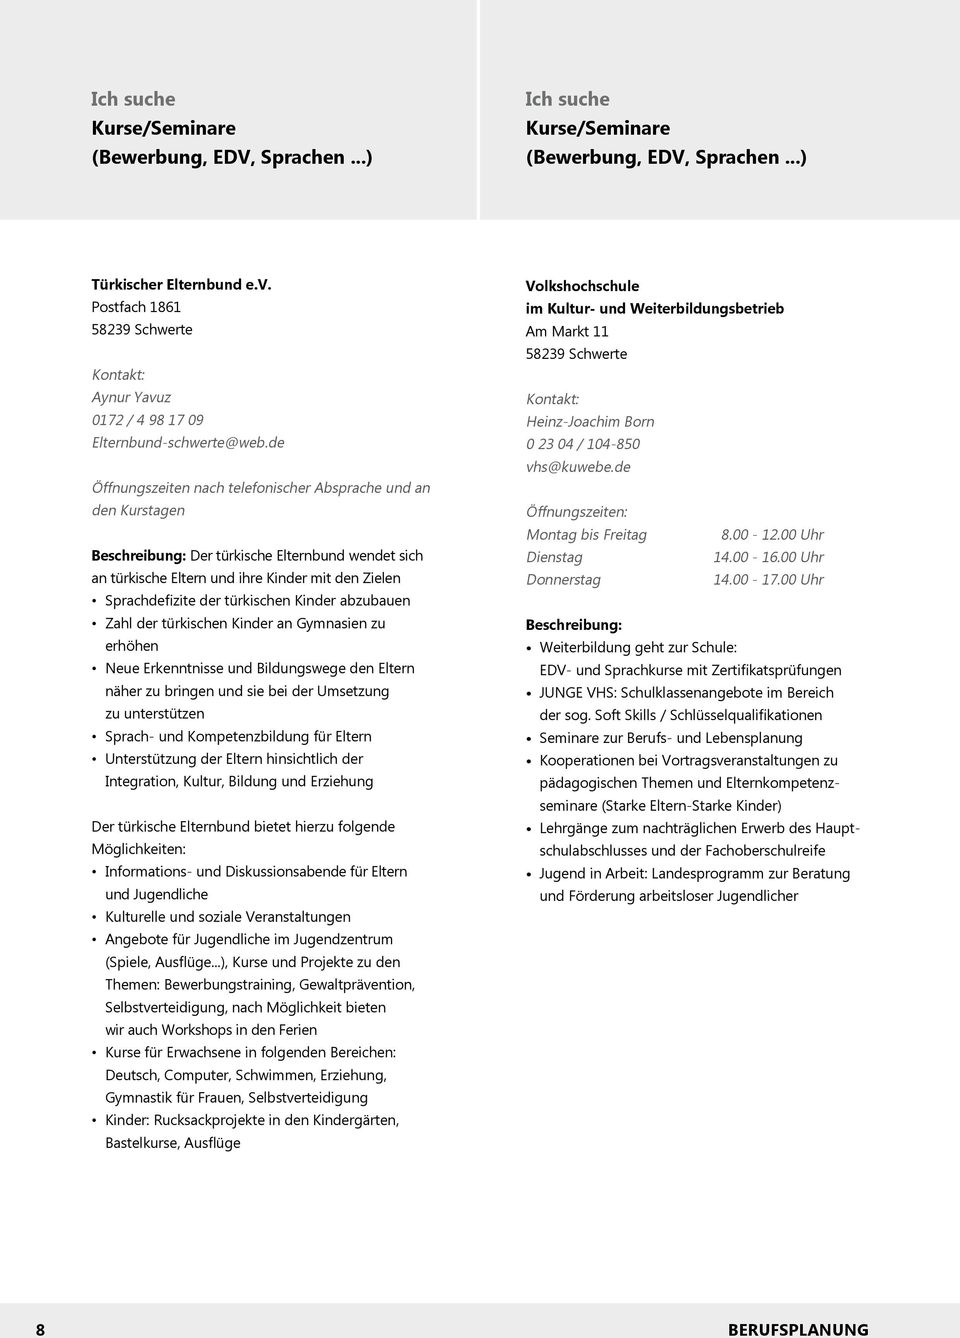 Beruf Beratung Freizeit. Wegweiser zur Berufs- und Lebensplanung Angebote  in und für Schwerte - PDF Free Download